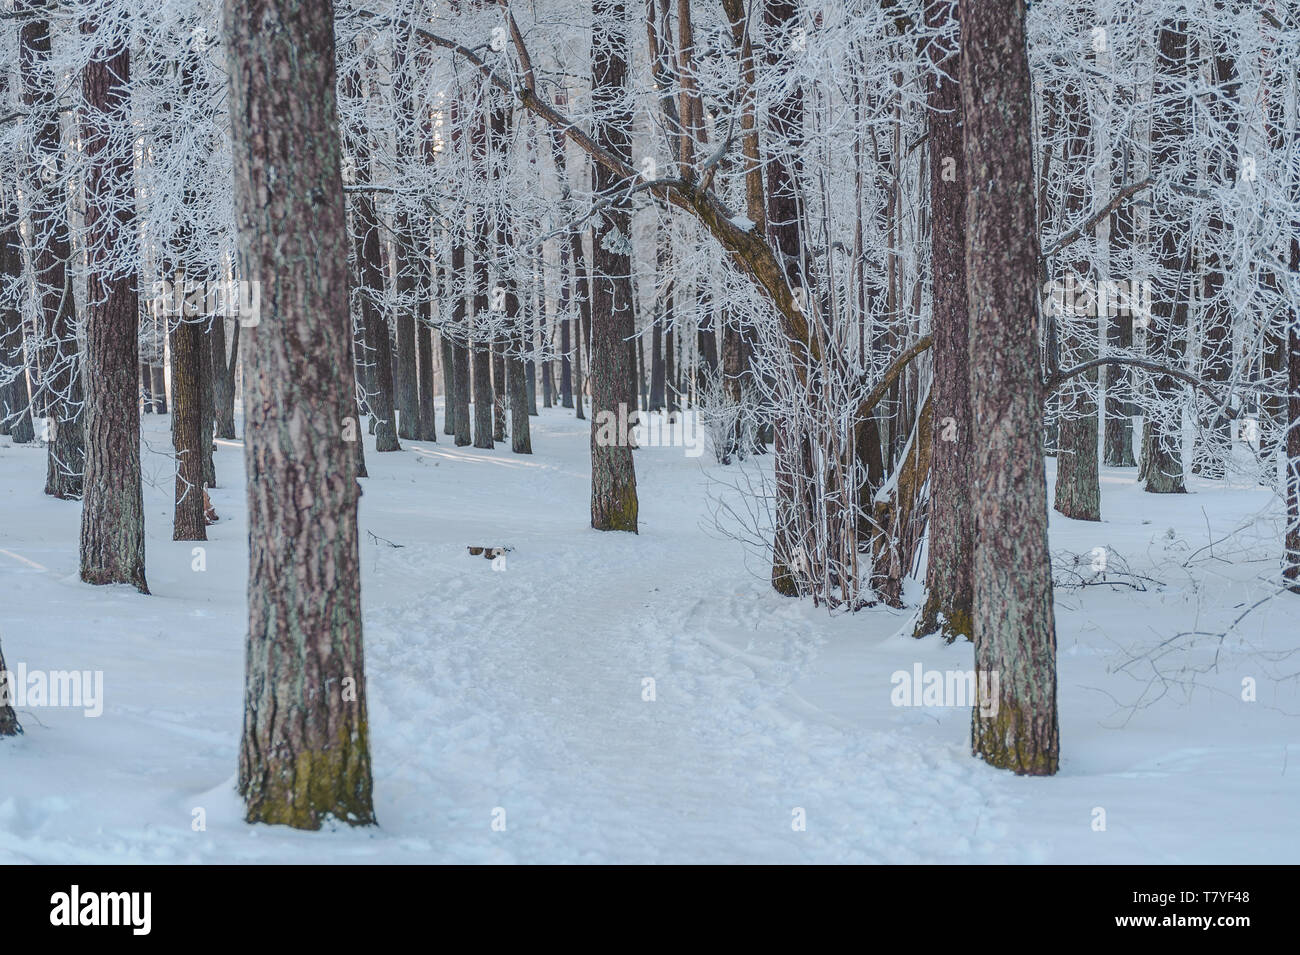 Arbres d'hiver couverte de givre. Chemin couvert de neige se cache derrière les arbres. La Lettonie. Mer Baltique. Banque D'Images